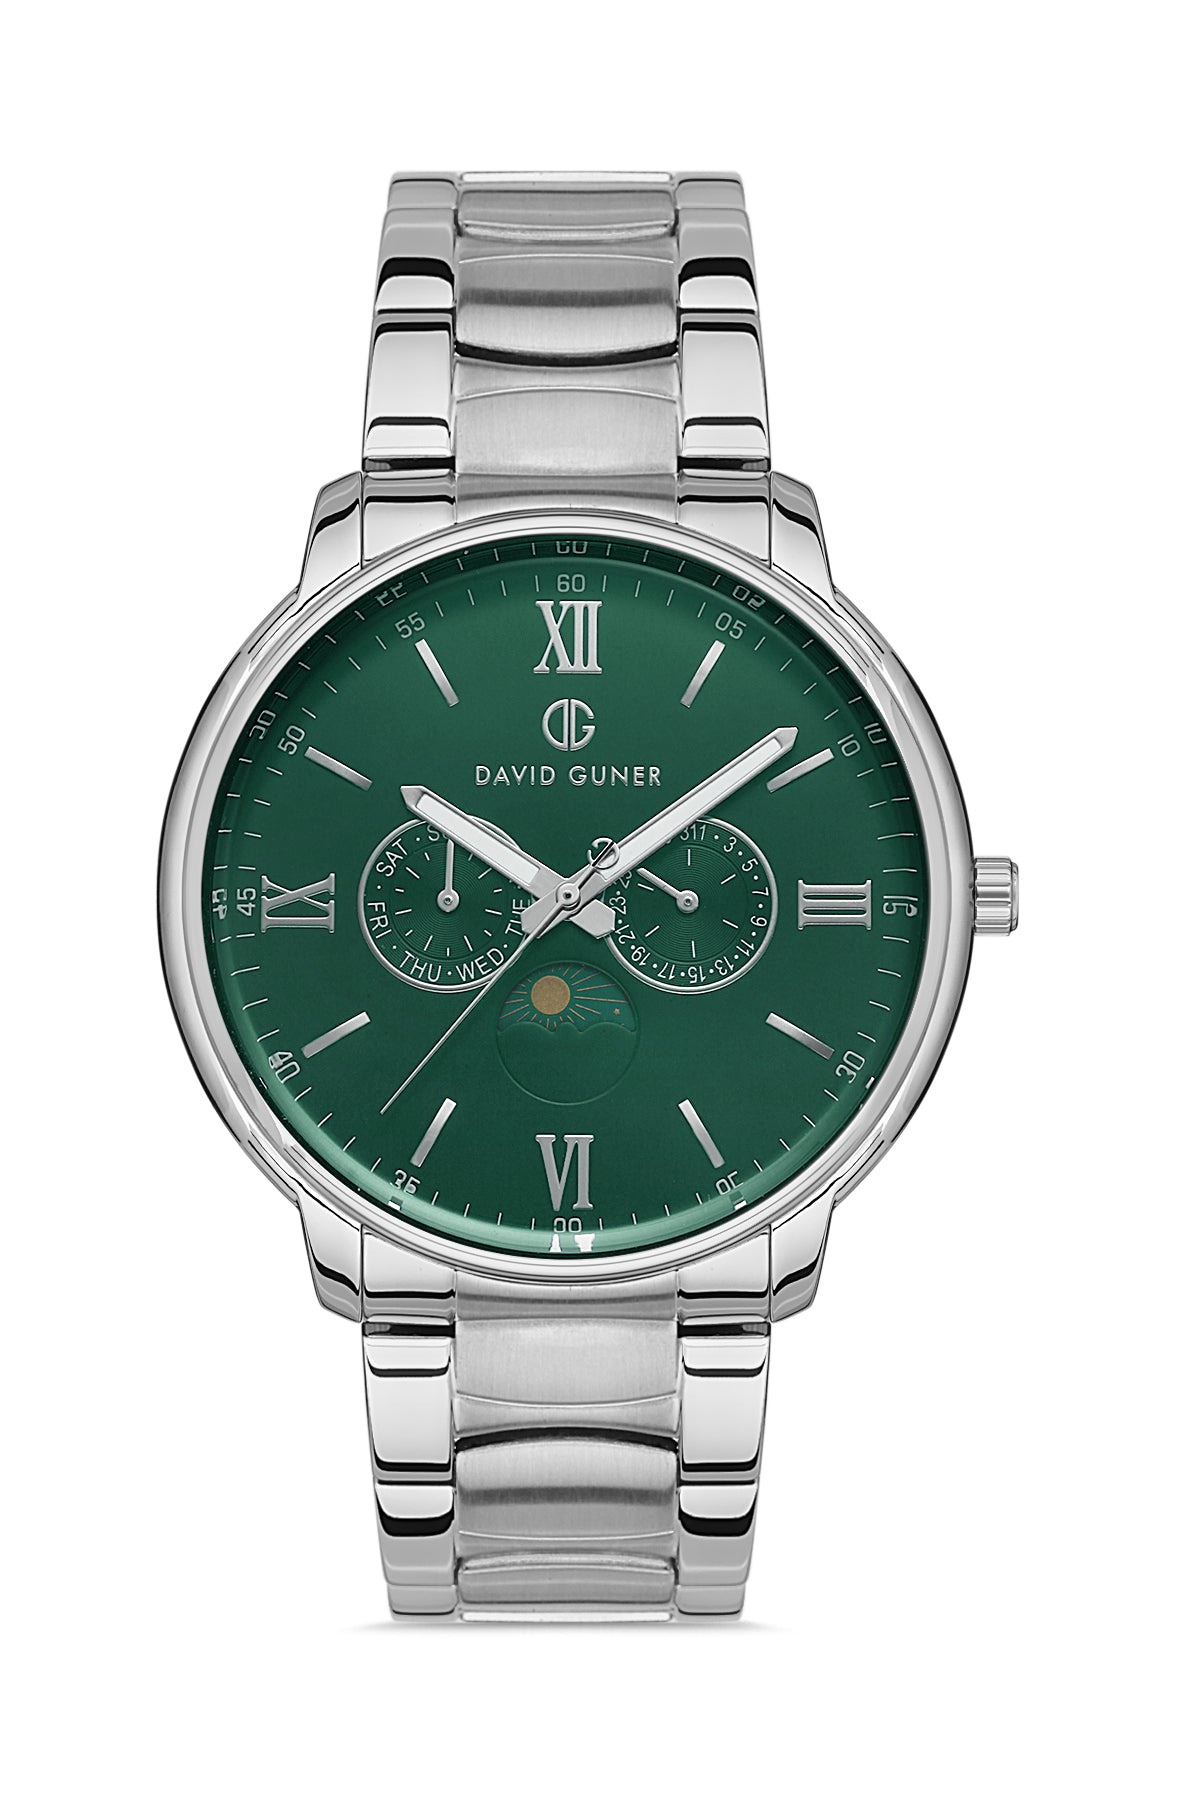 DAVID GUNER Green Dial Multi-Function Men's Wristwatch